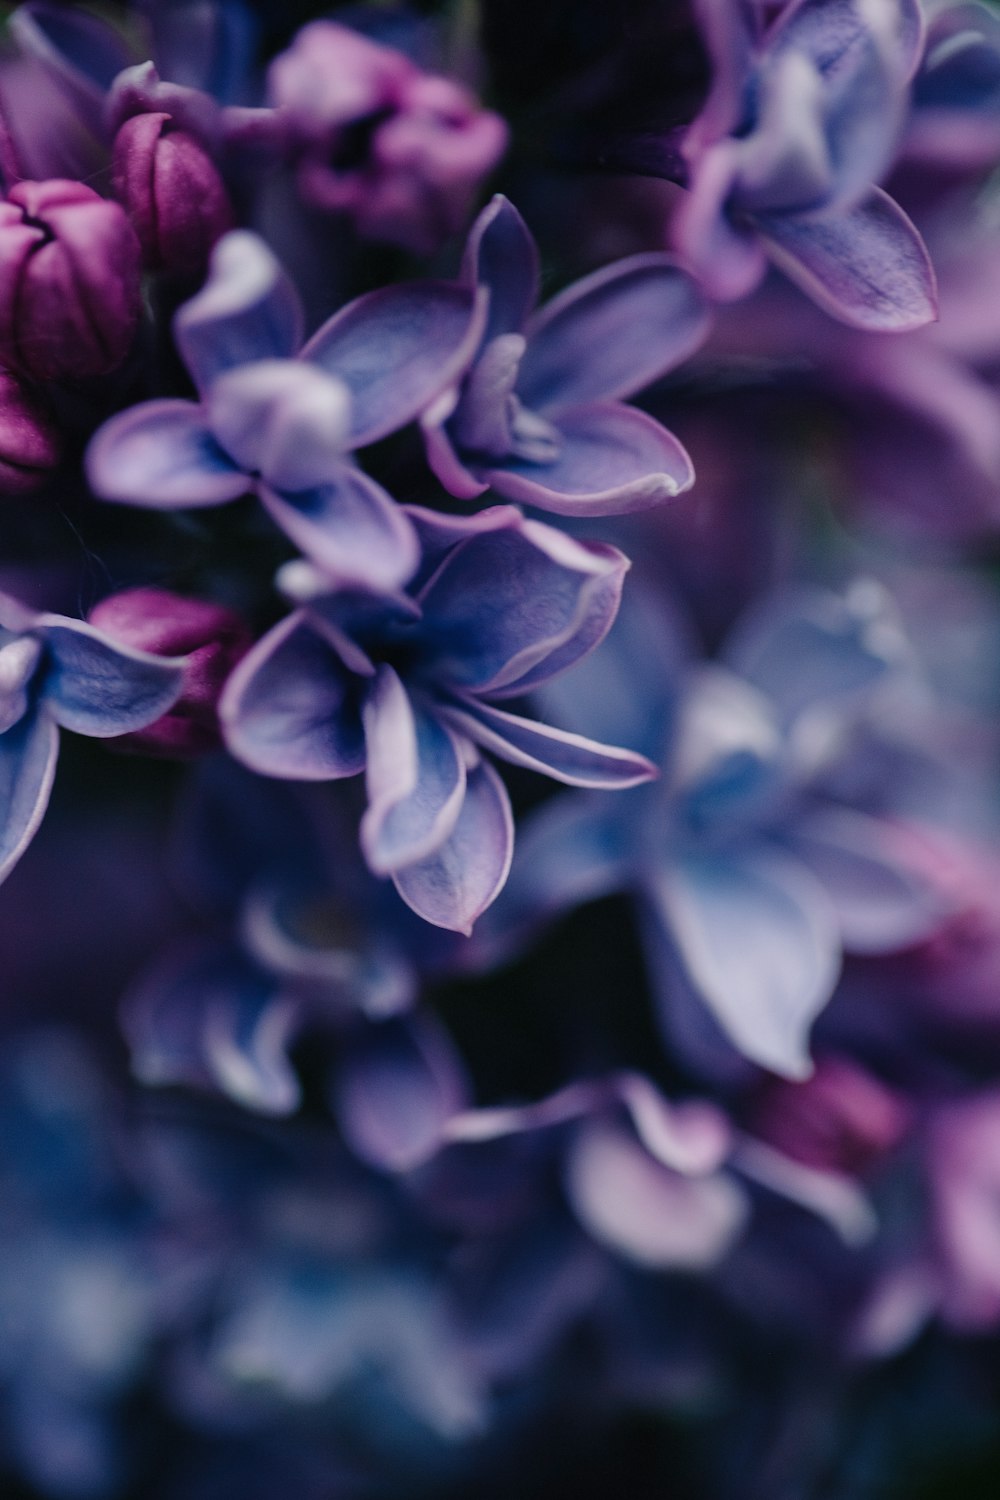 水滴が付着した紫色の花の束